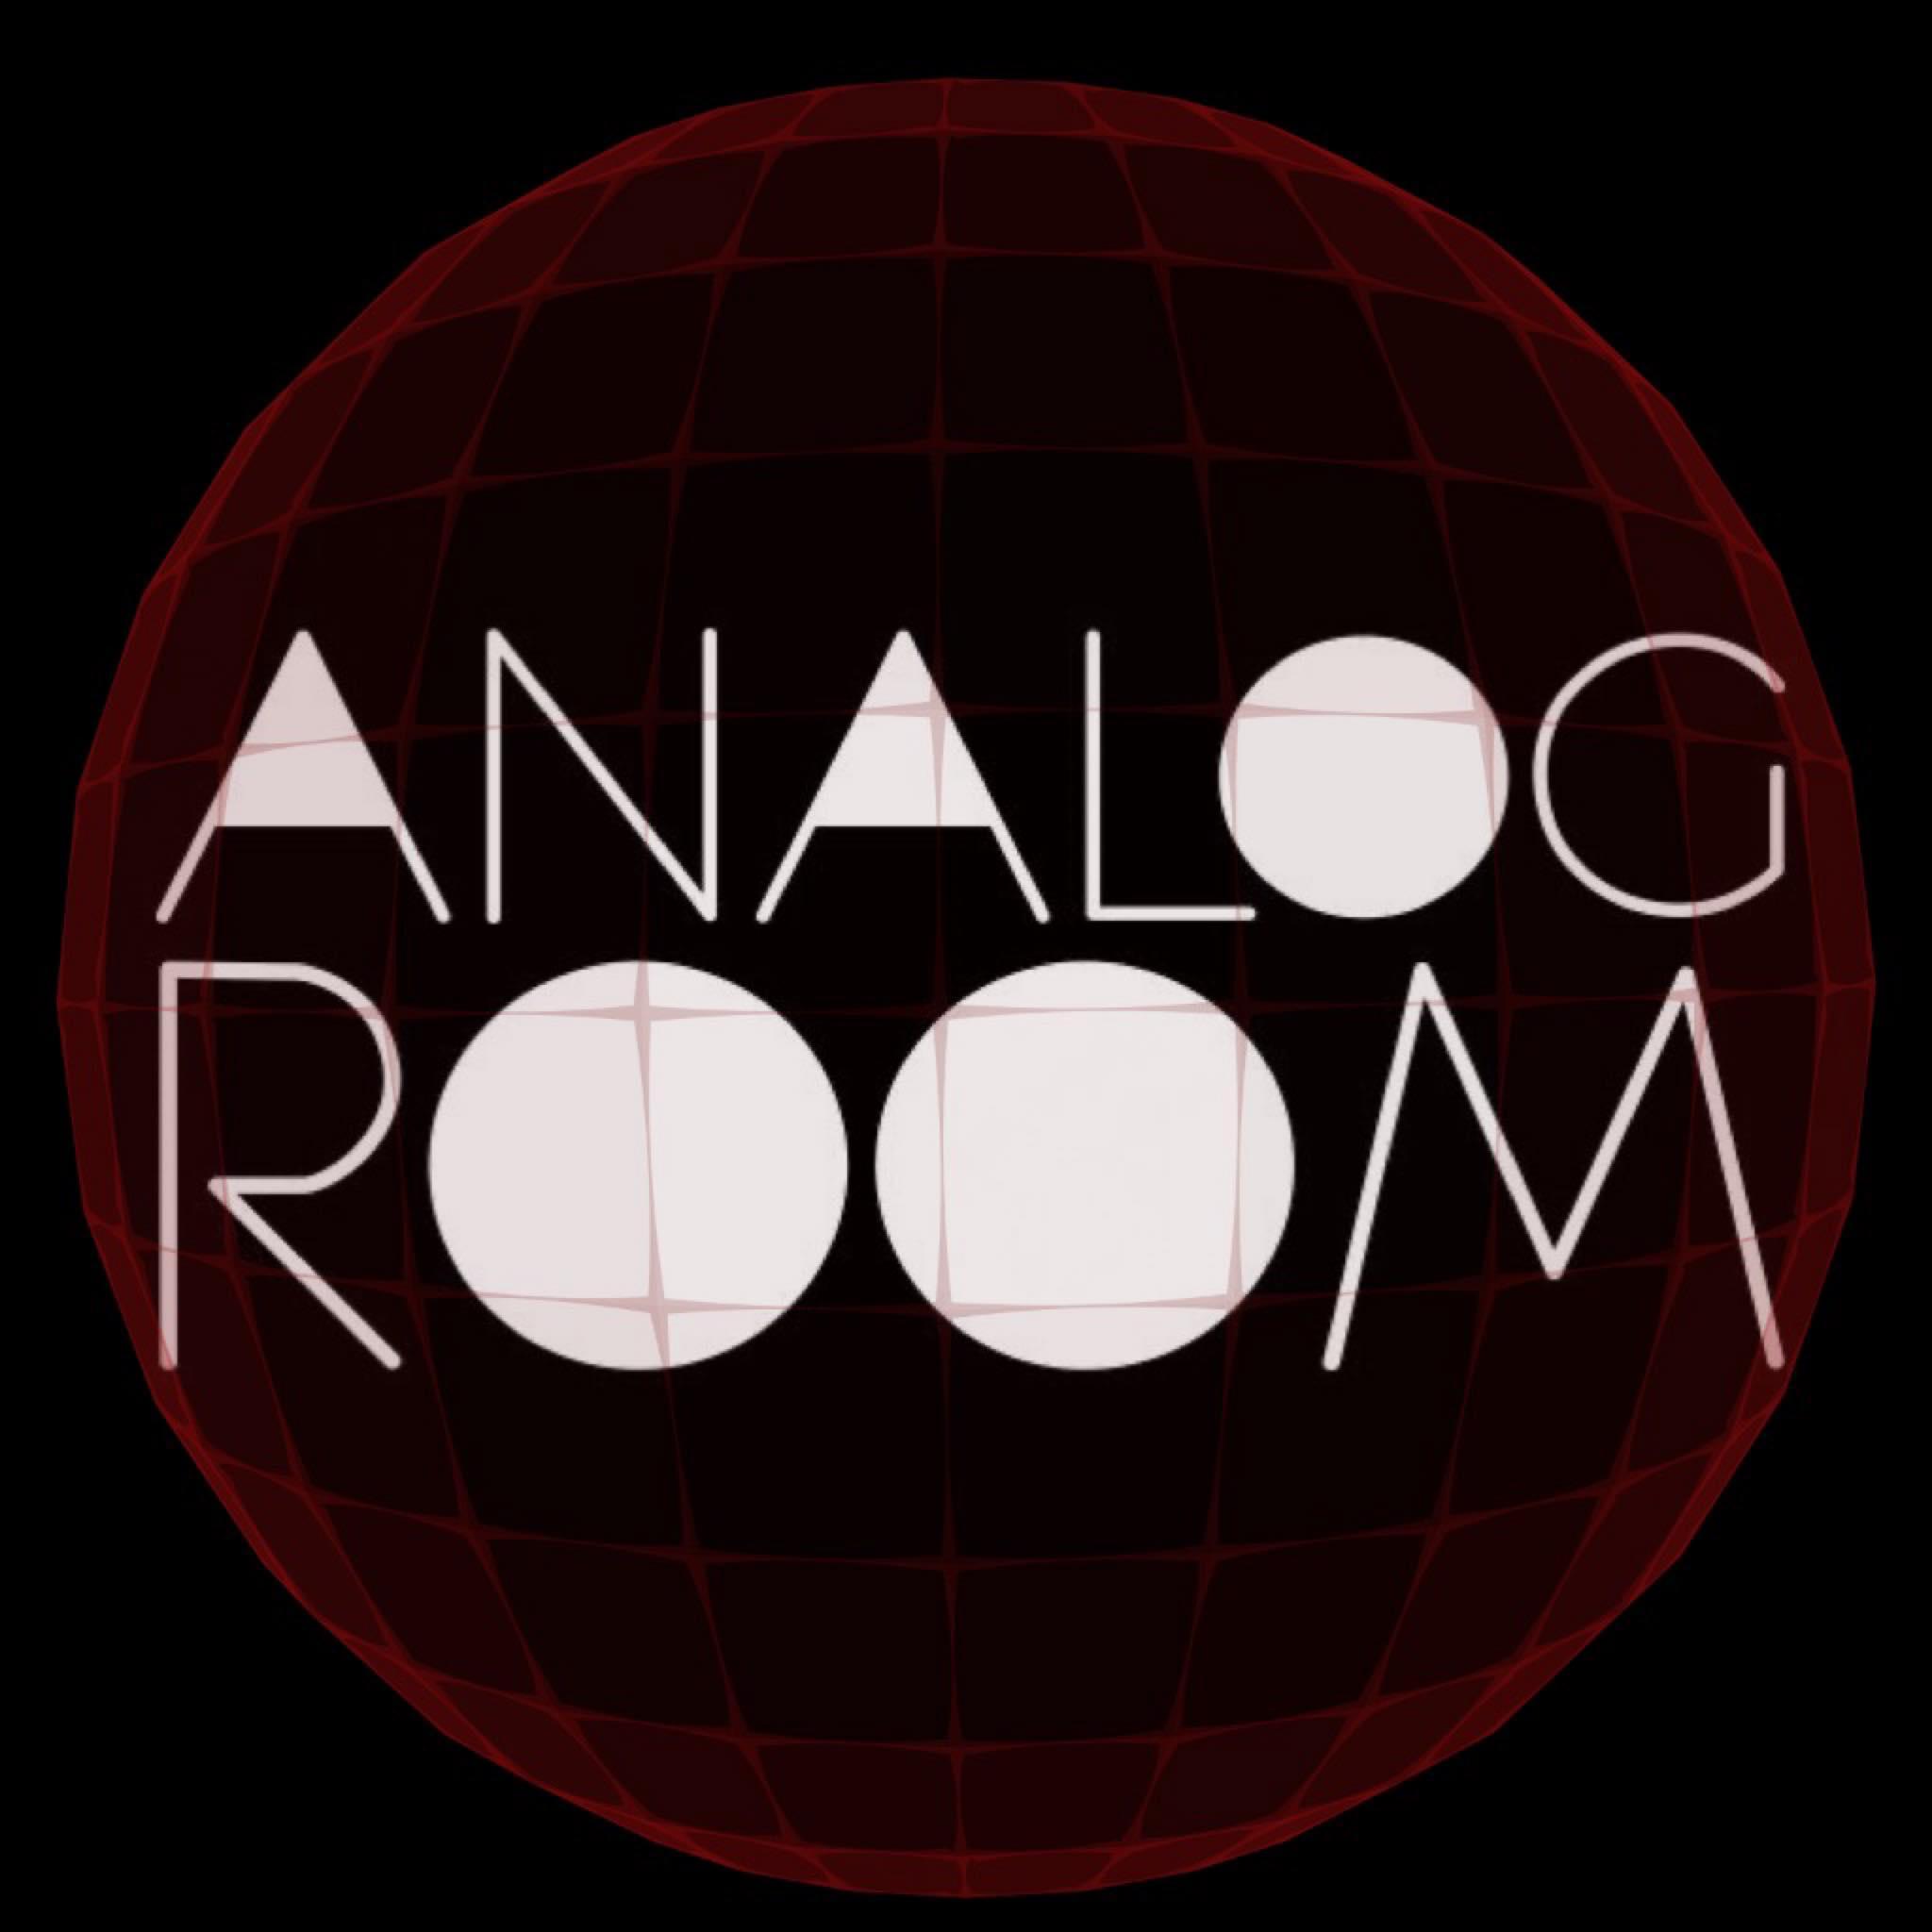 Analog Room pres. Optimo